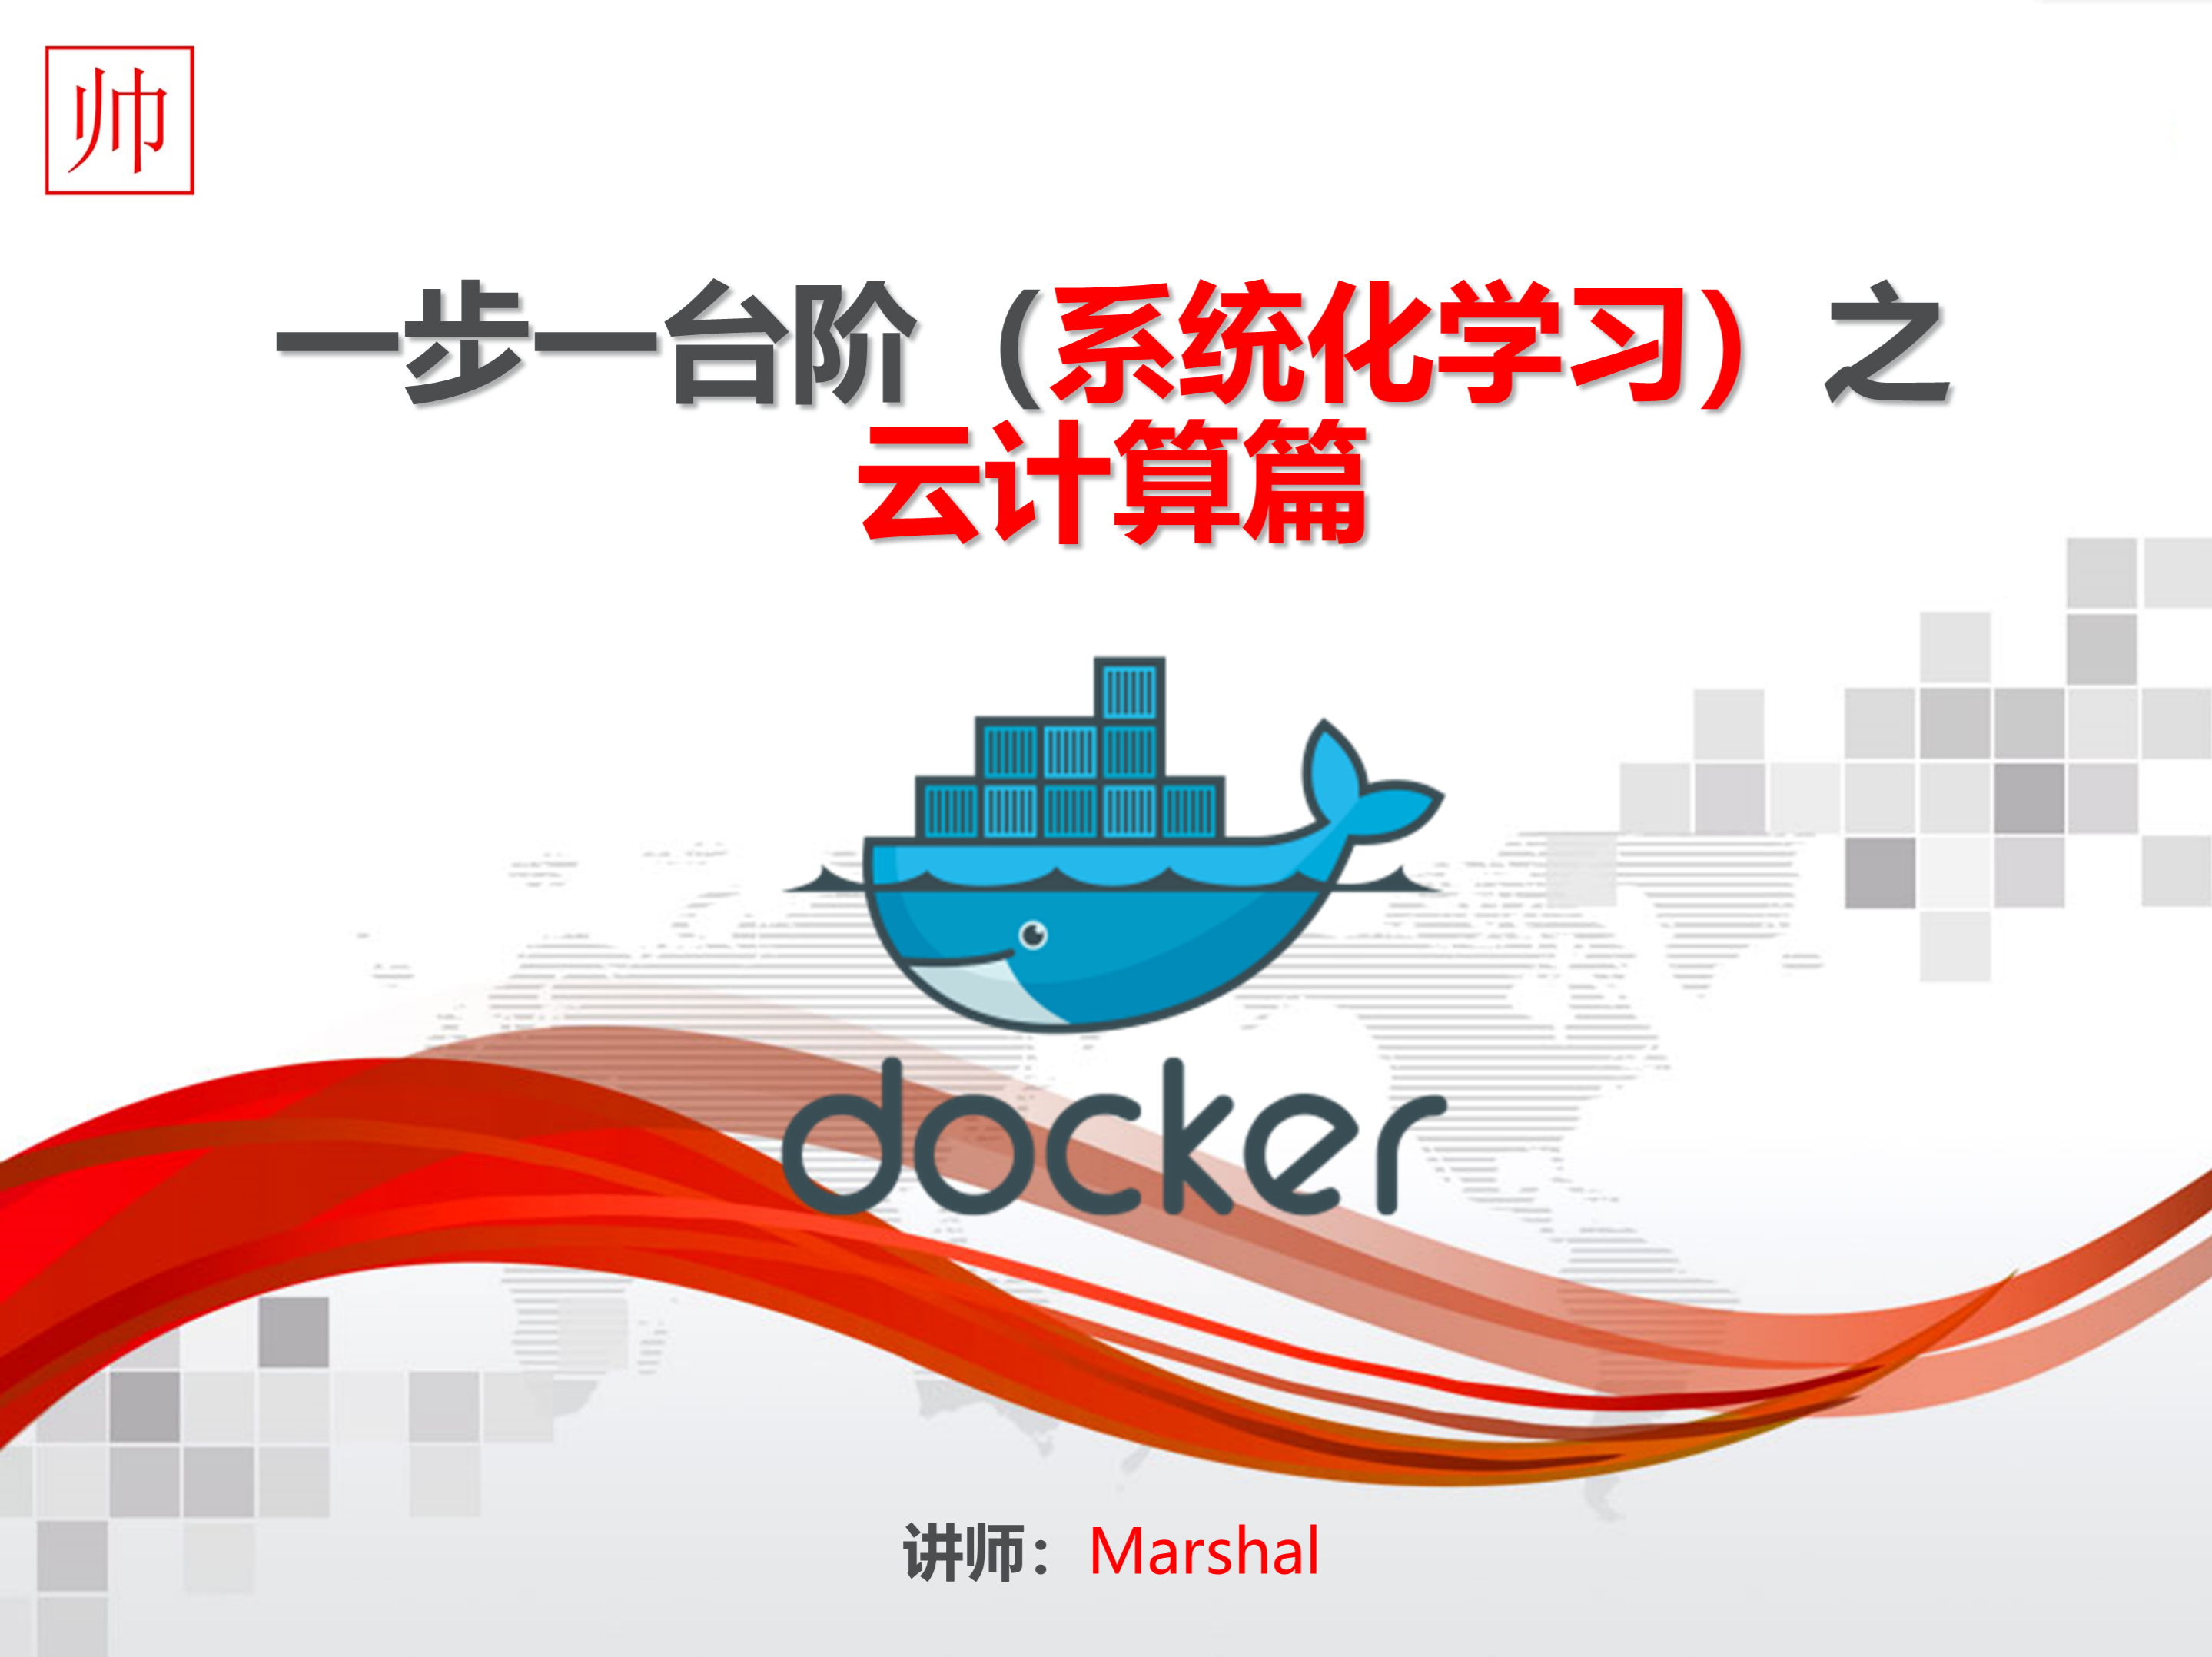 Docker，一步一台阶（系统化学习）之云计算技术篇 —— Docker